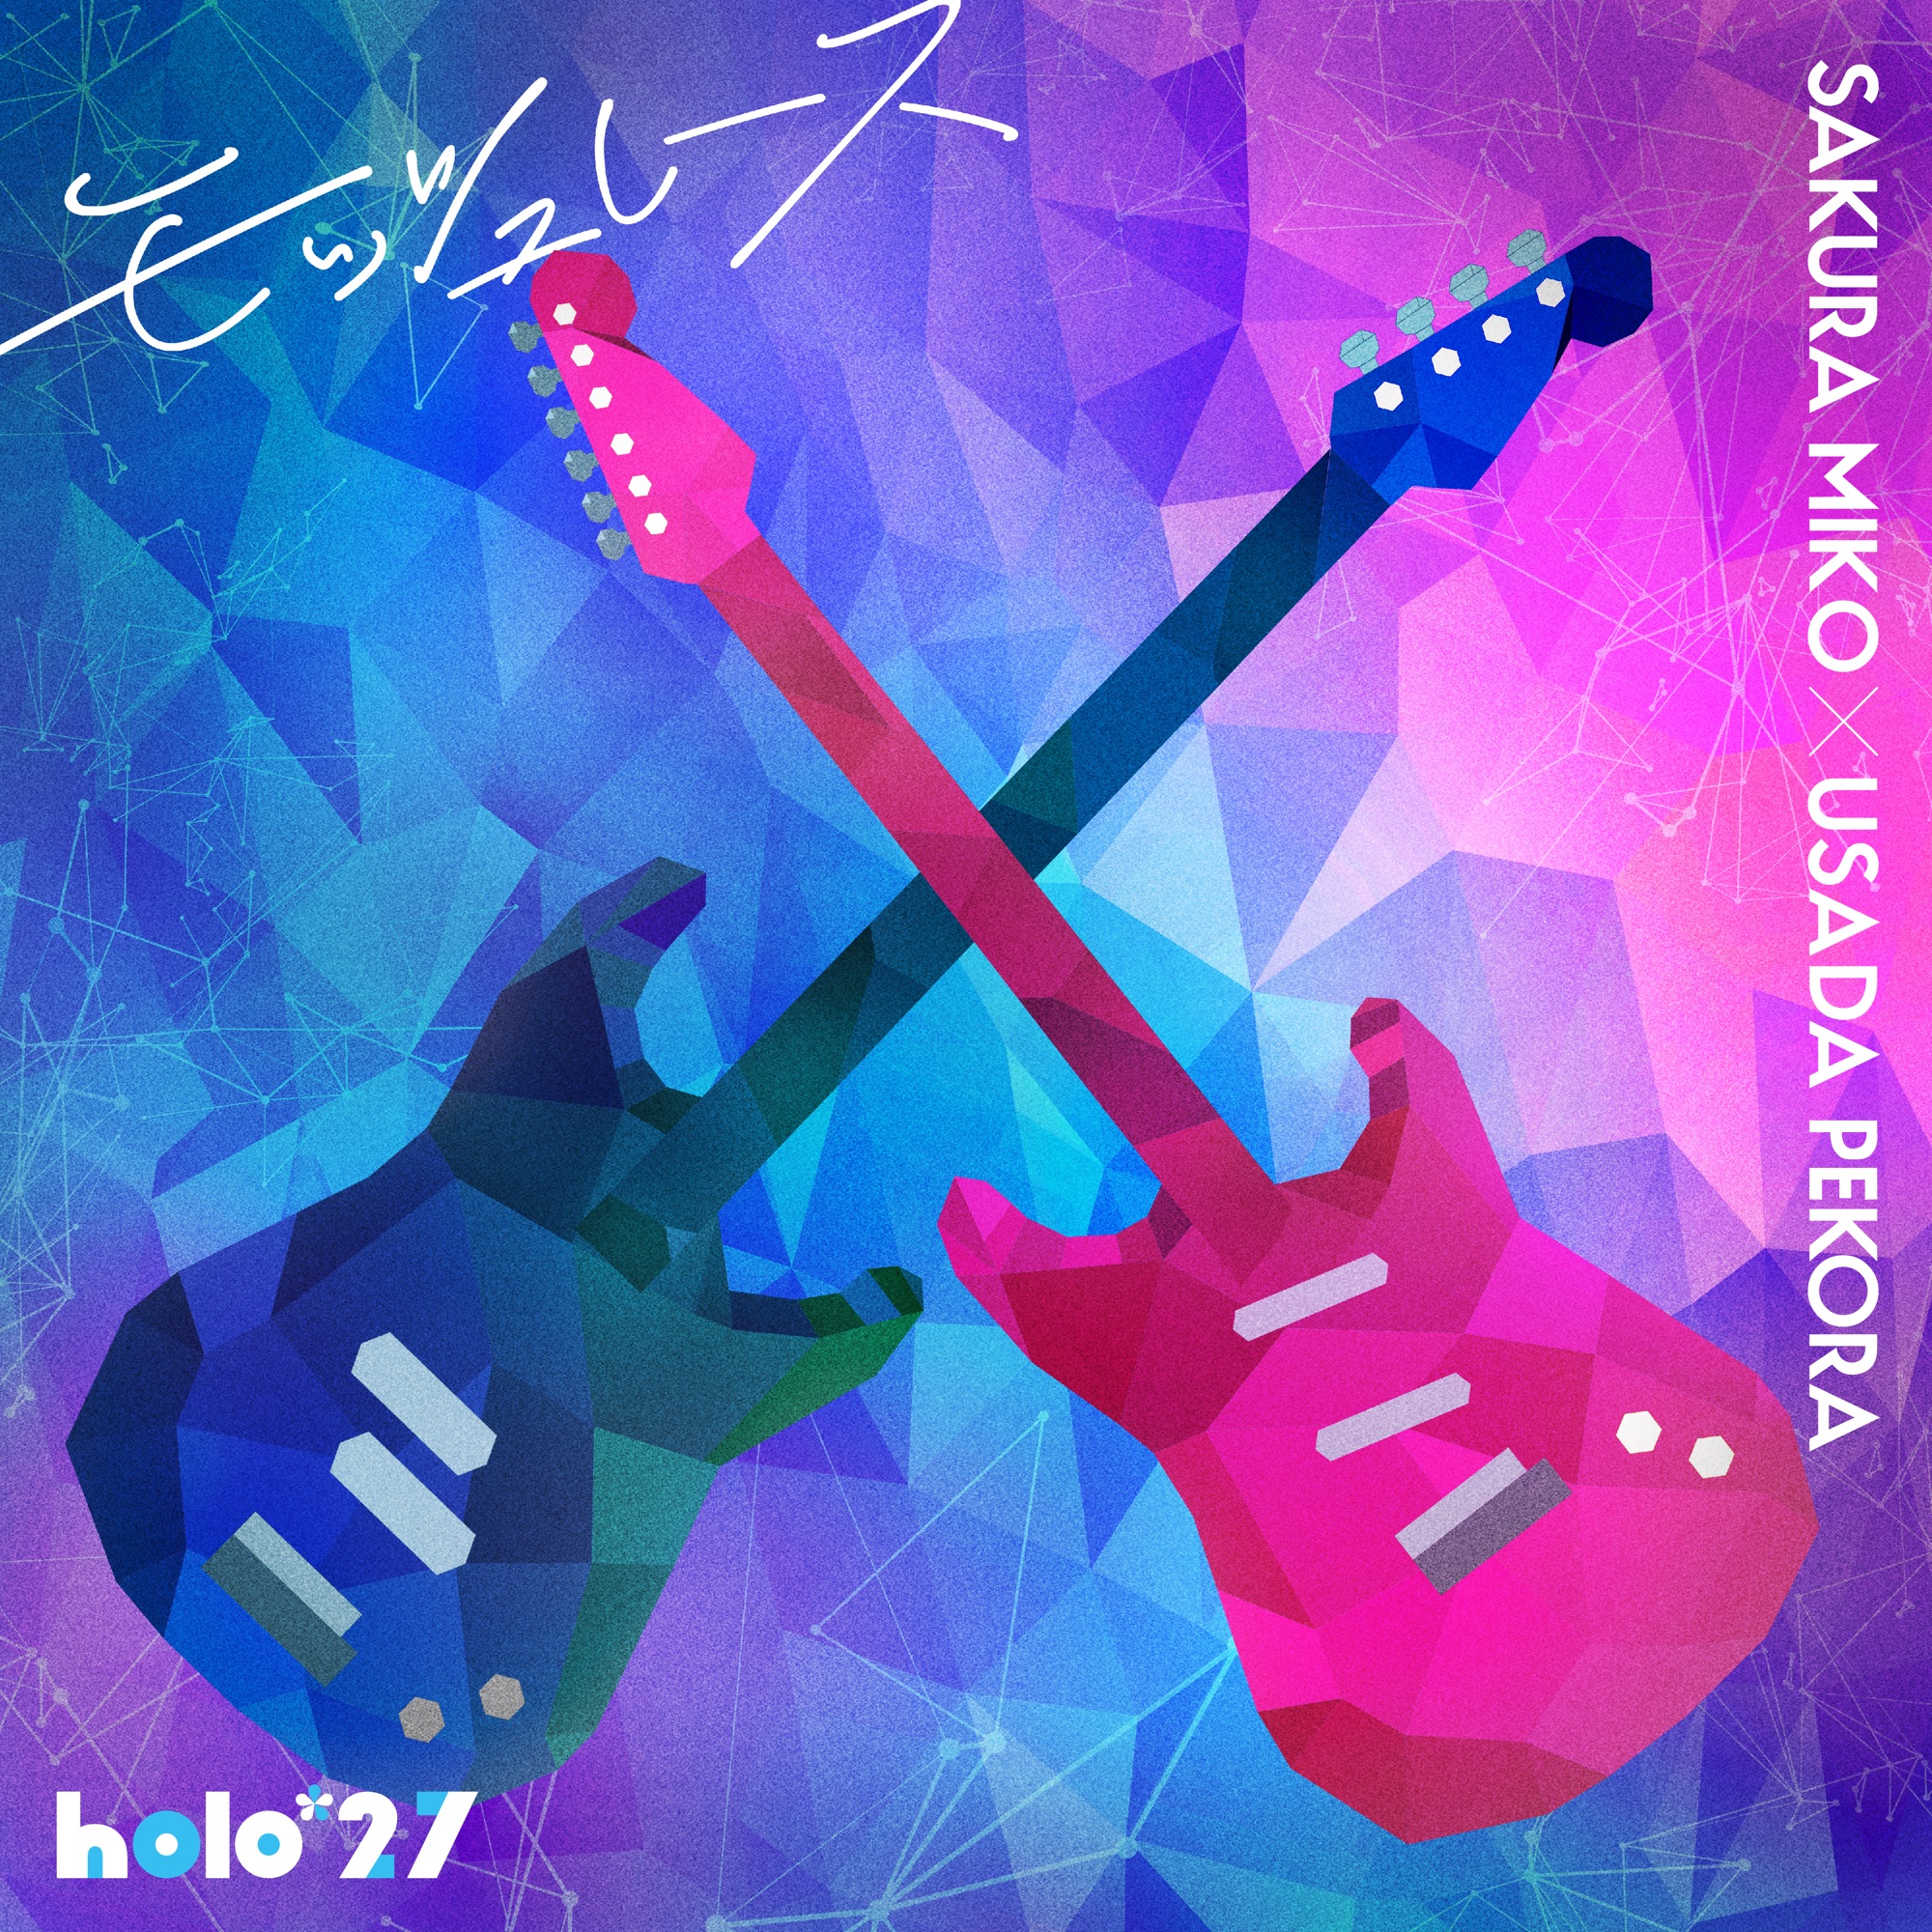 ホロライブ × DECO*27 音楽プロジェクト「holo*27」第二弾先行配信